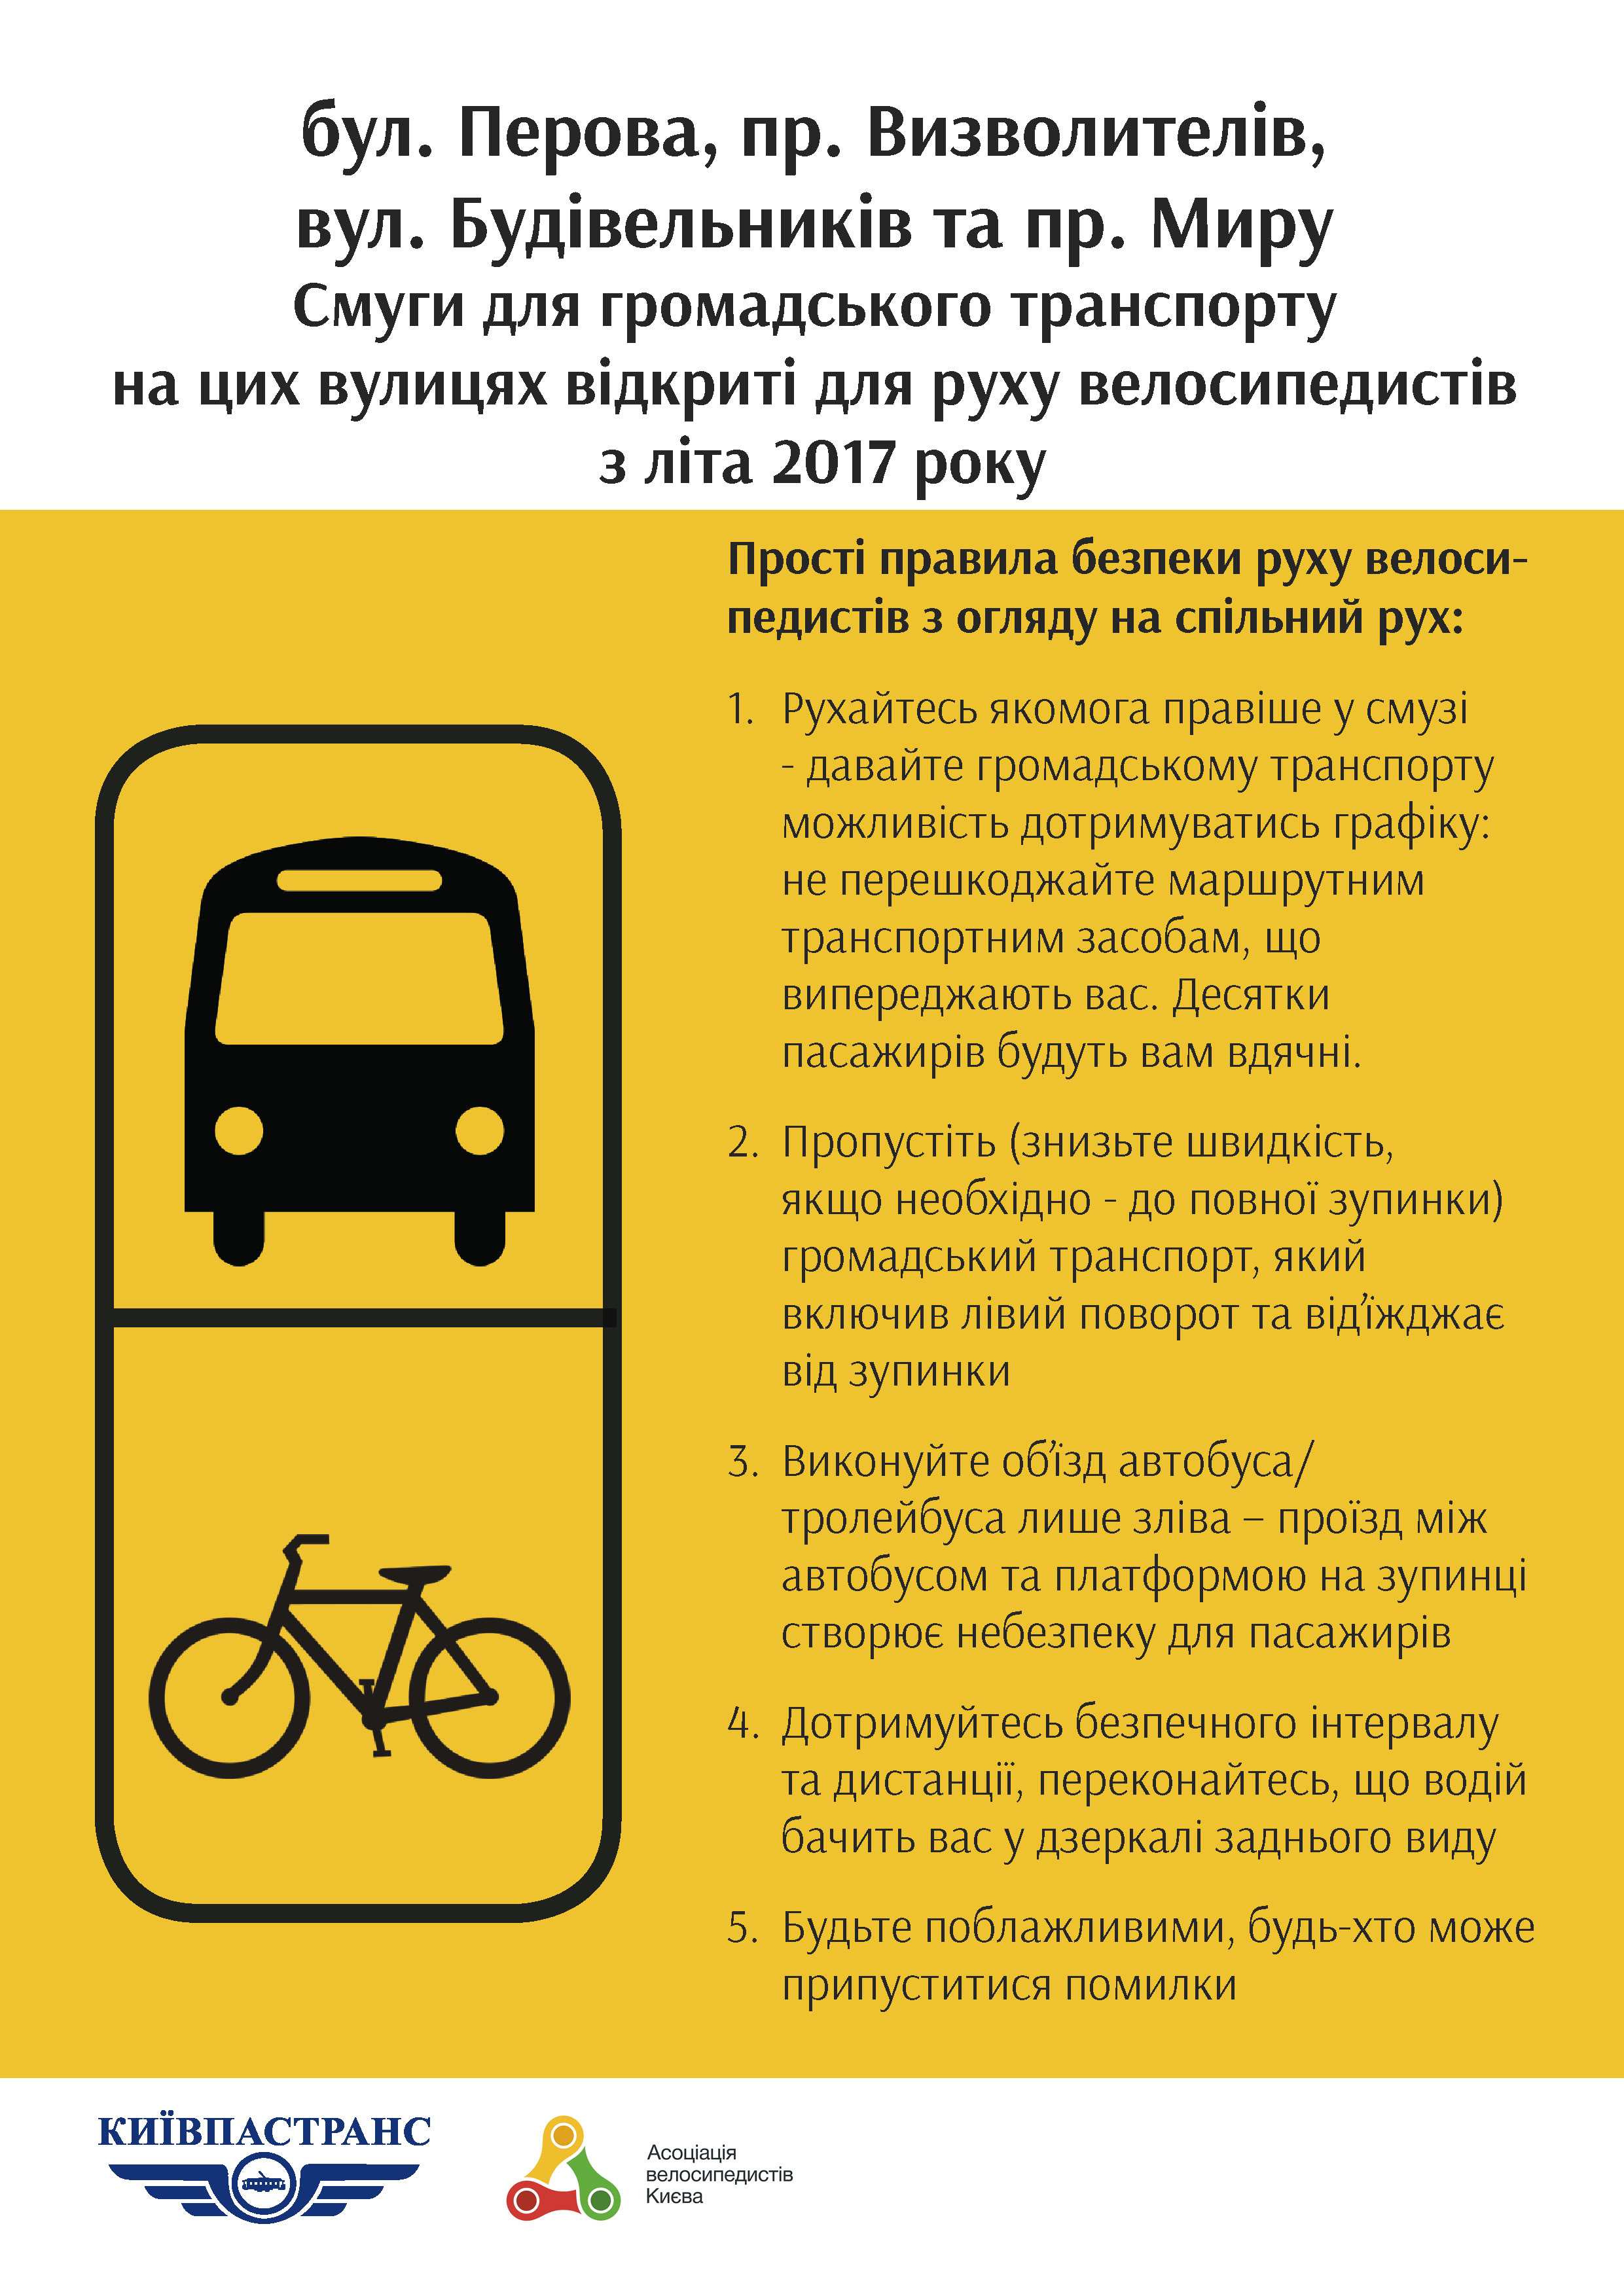 На бульваре Перова в Киеве велосипедистам разрешат ездить по полосе общественного транспорта (схема)